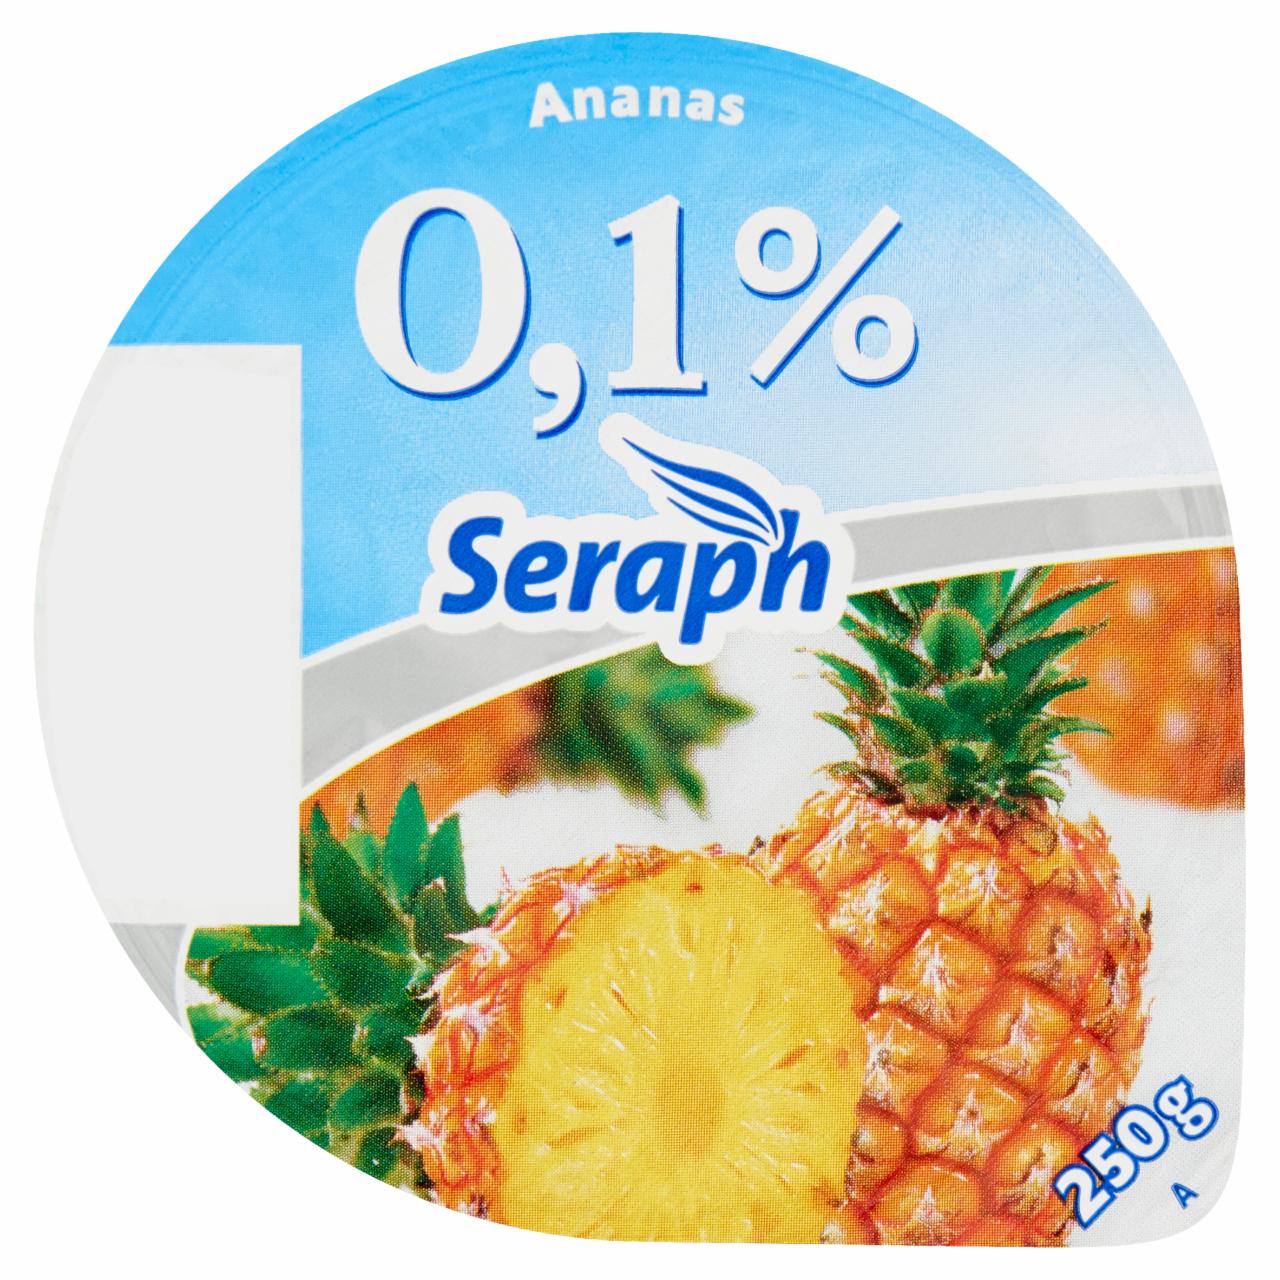 Képek - Seraph 0,1% ananászos sovány joghurt gyümölcskészítménnyel 250 g